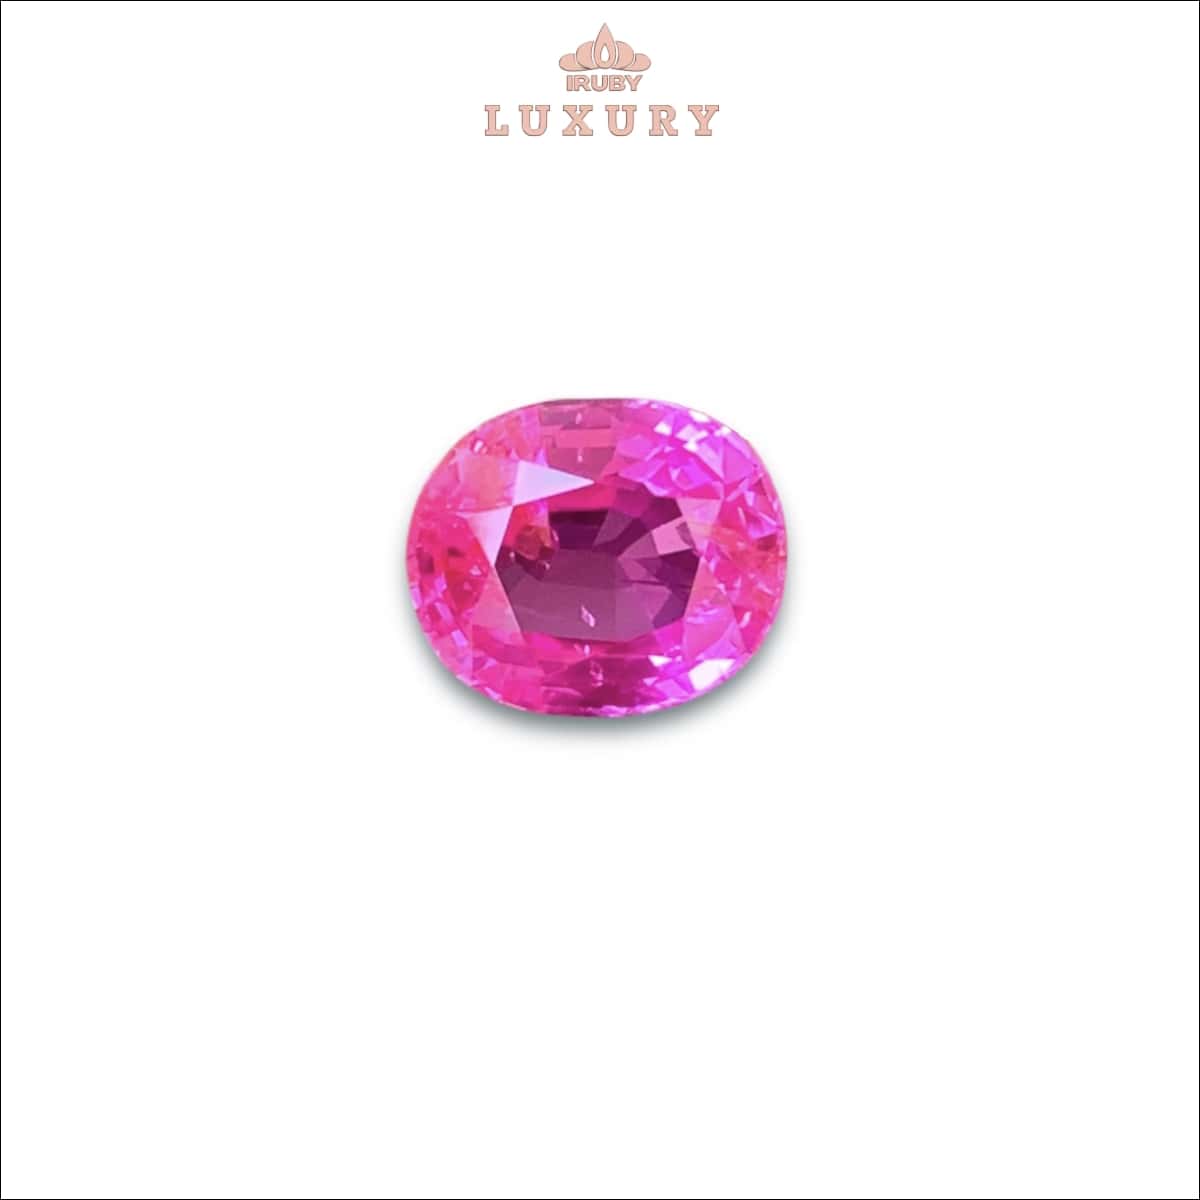 Viên Sapphire màu hot pink 3,30ct tự nhiên 100% – IRPS142 238330